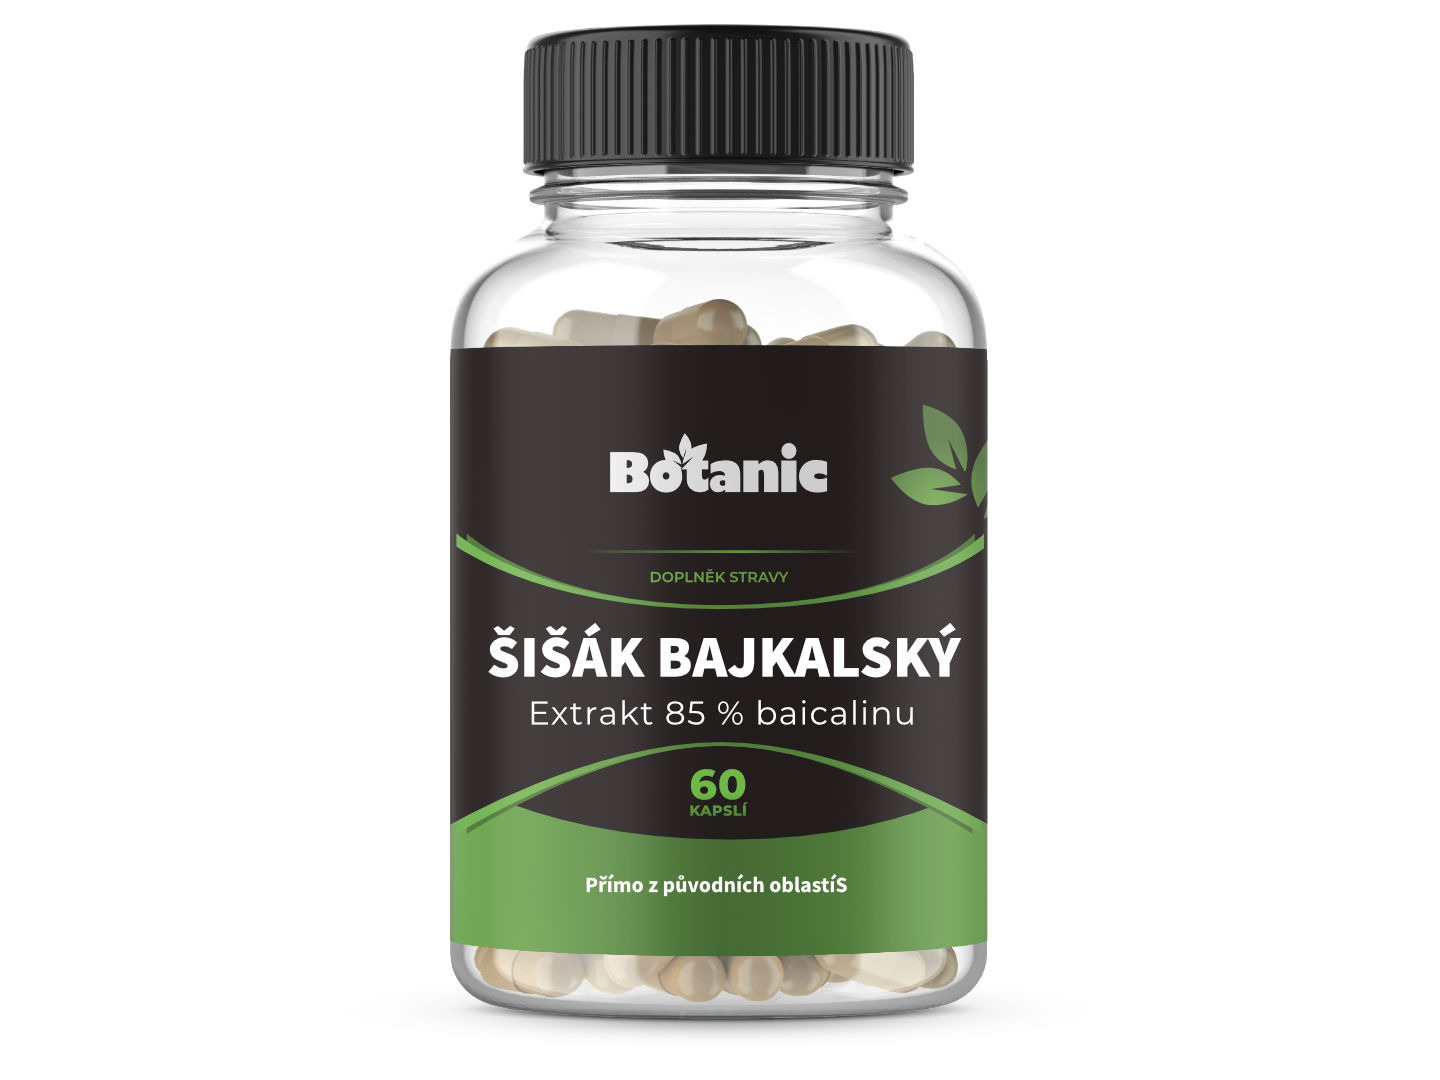 Botanic Šišák bajkalský - Extrakt 85 % baicalinu kapsle 60kap.